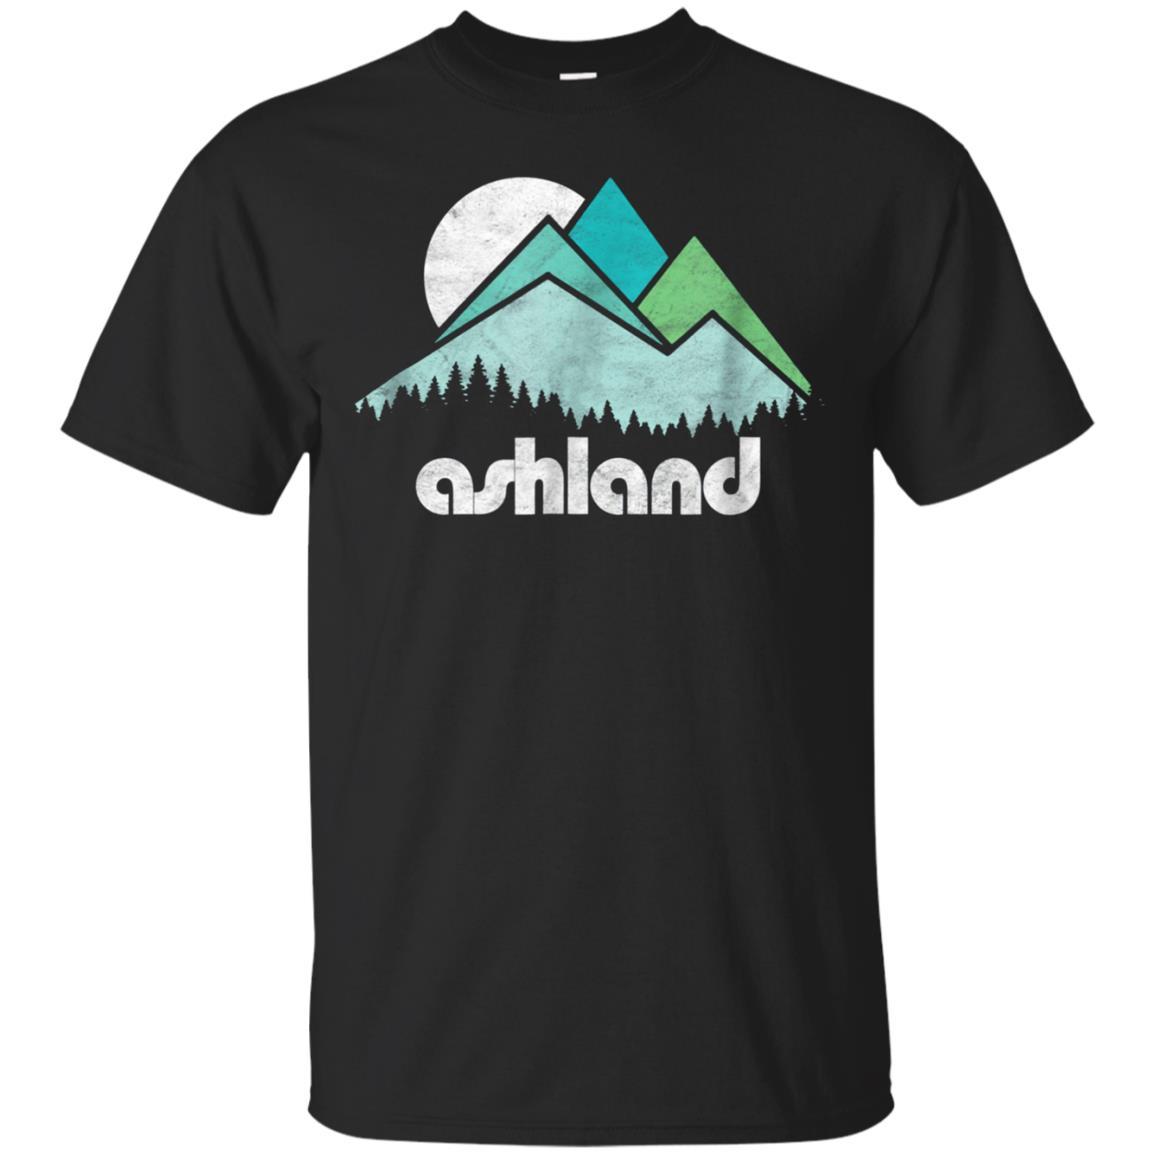 Ashland Oregon Vintage Minimalist Mountains Graphic Shirt